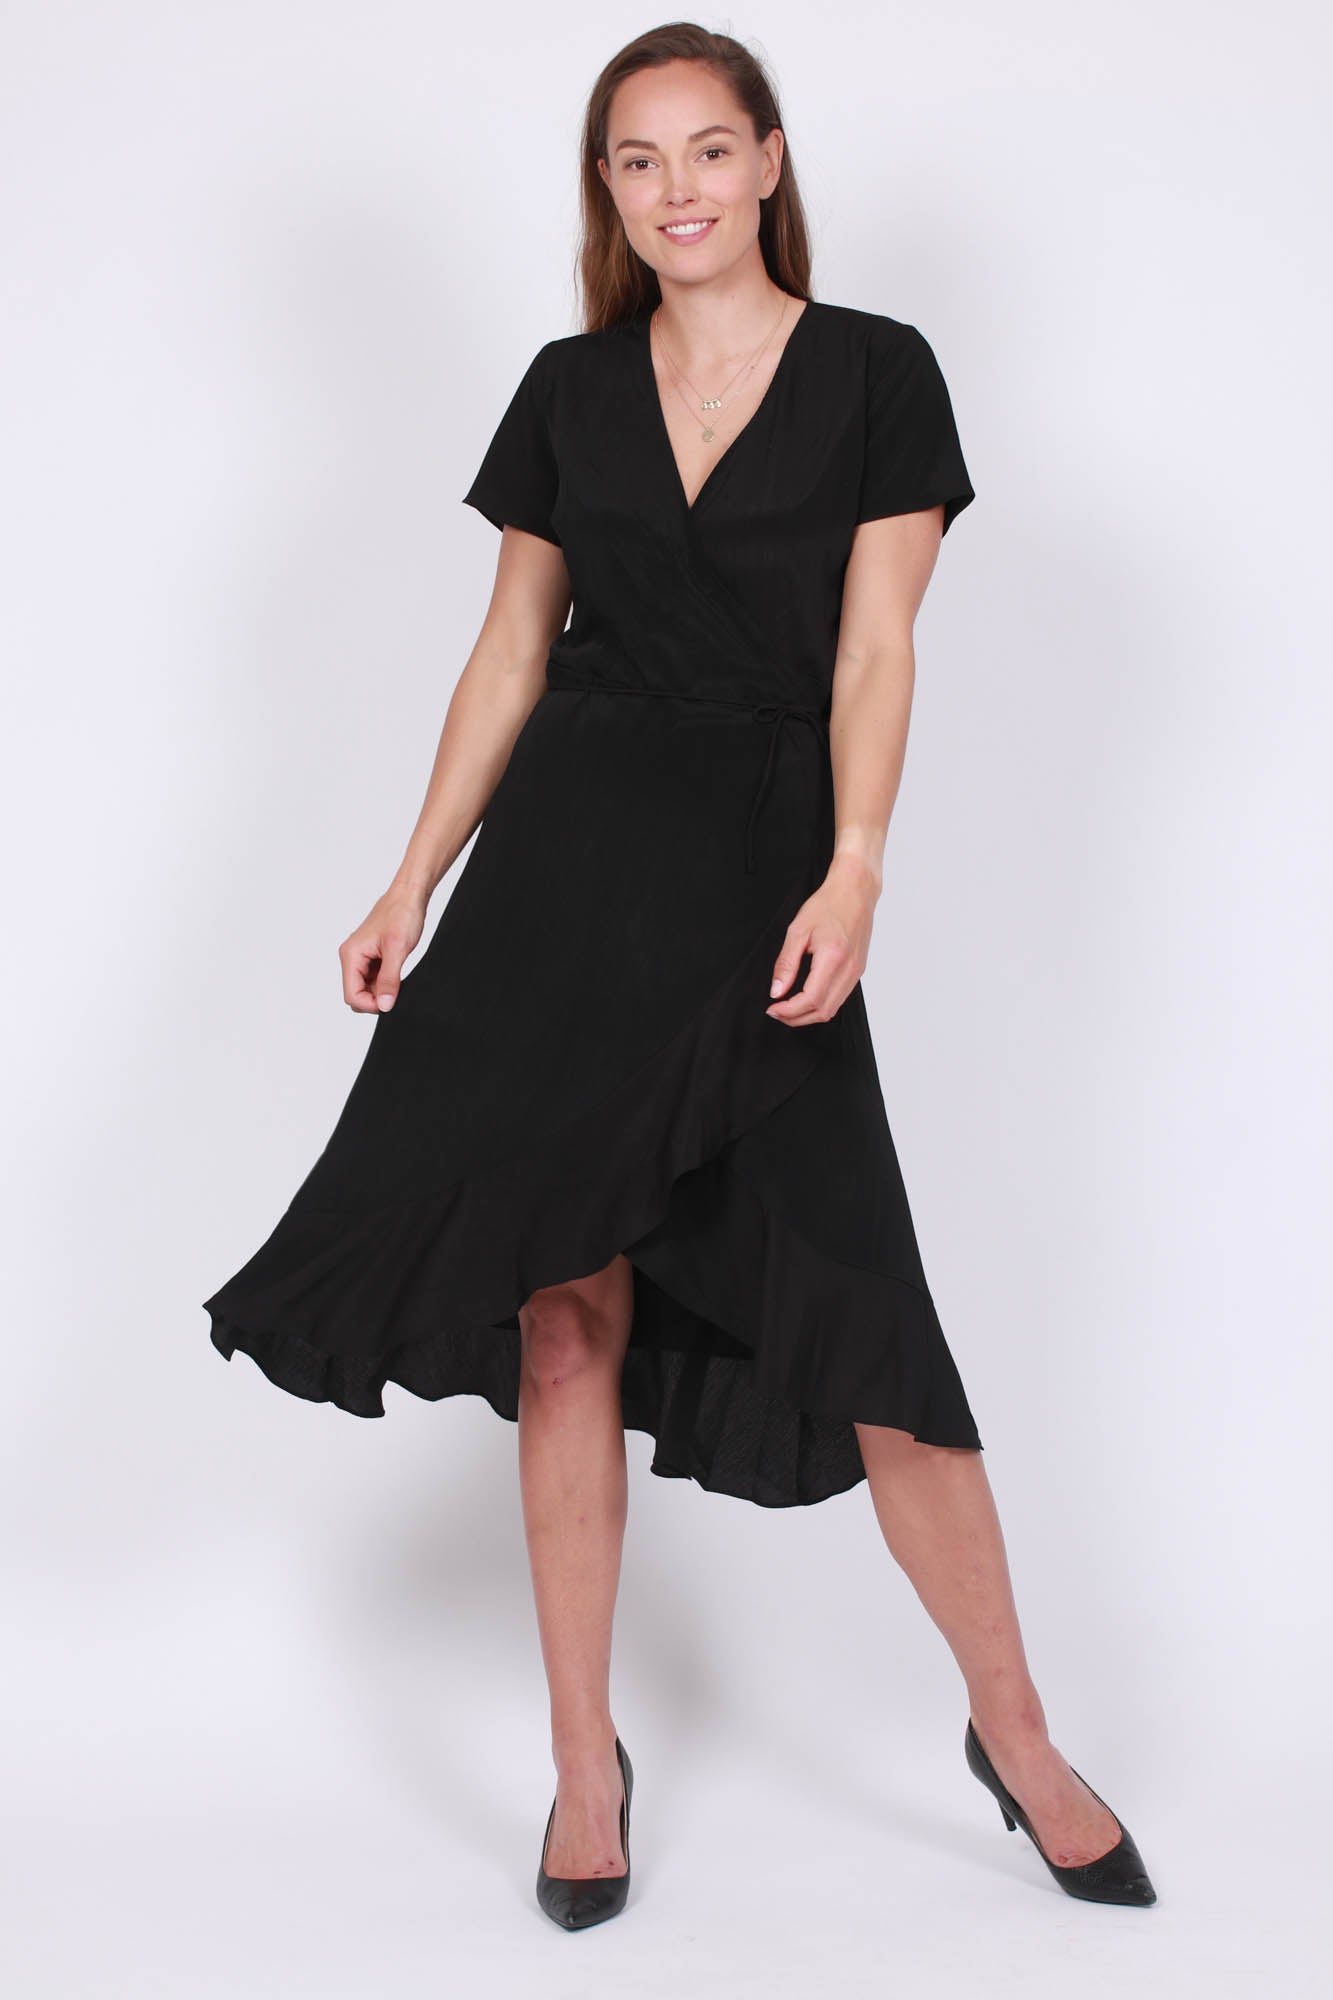 Magga Structure Dress - Black - Neo Noir - Kjoler - VILLOID.no